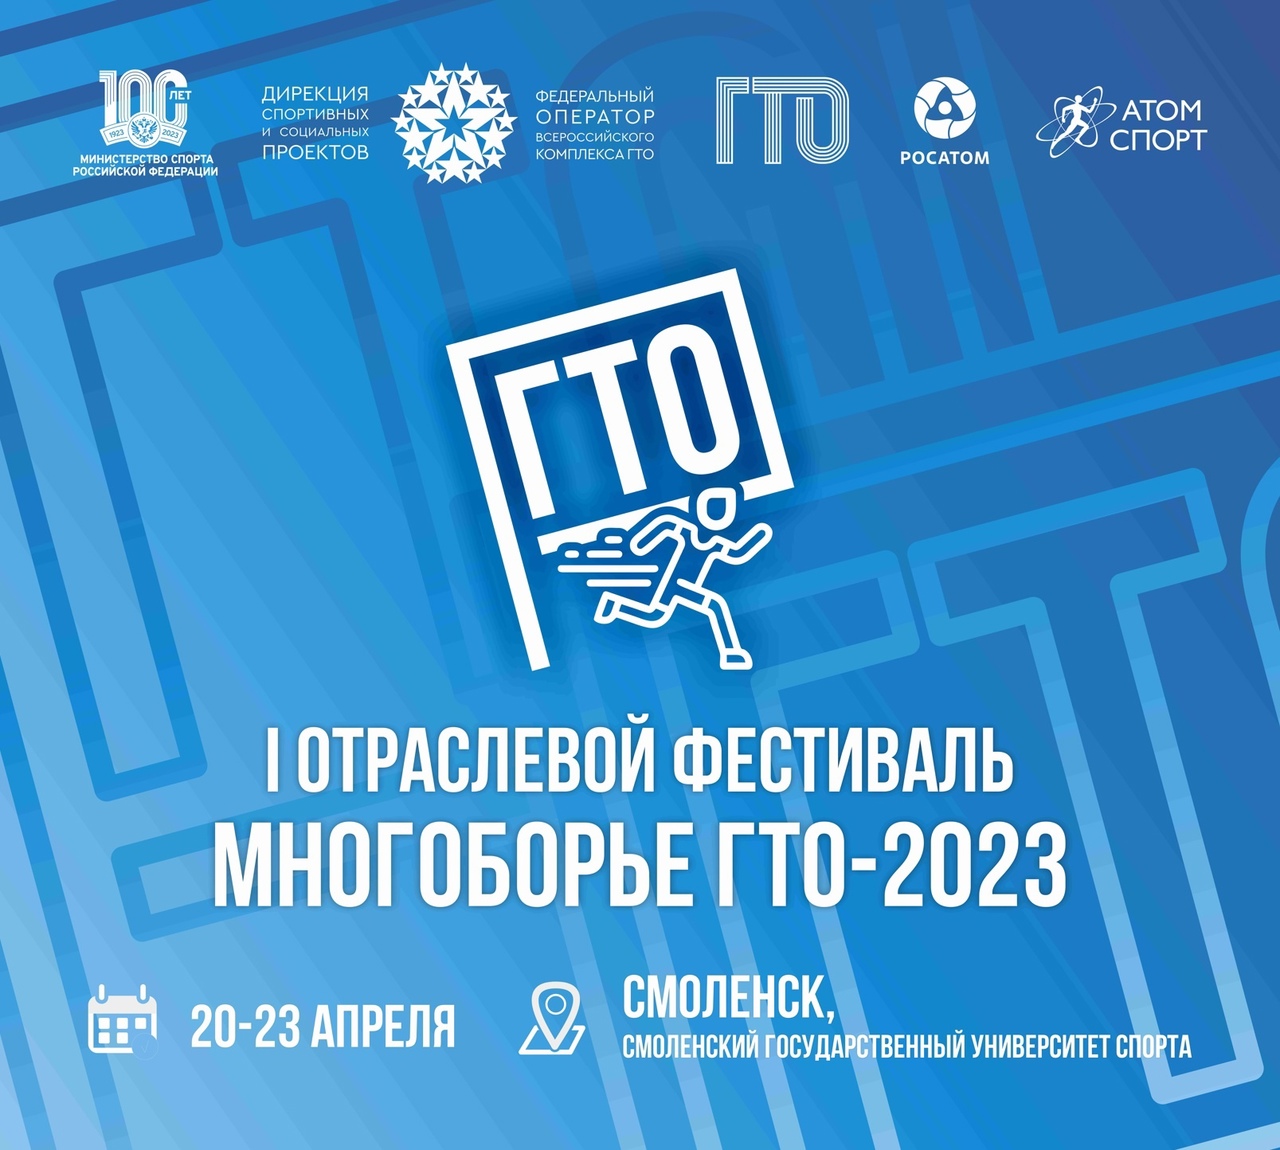 Первый отраслевой фестиваль «Многоборье ГТО-2023»